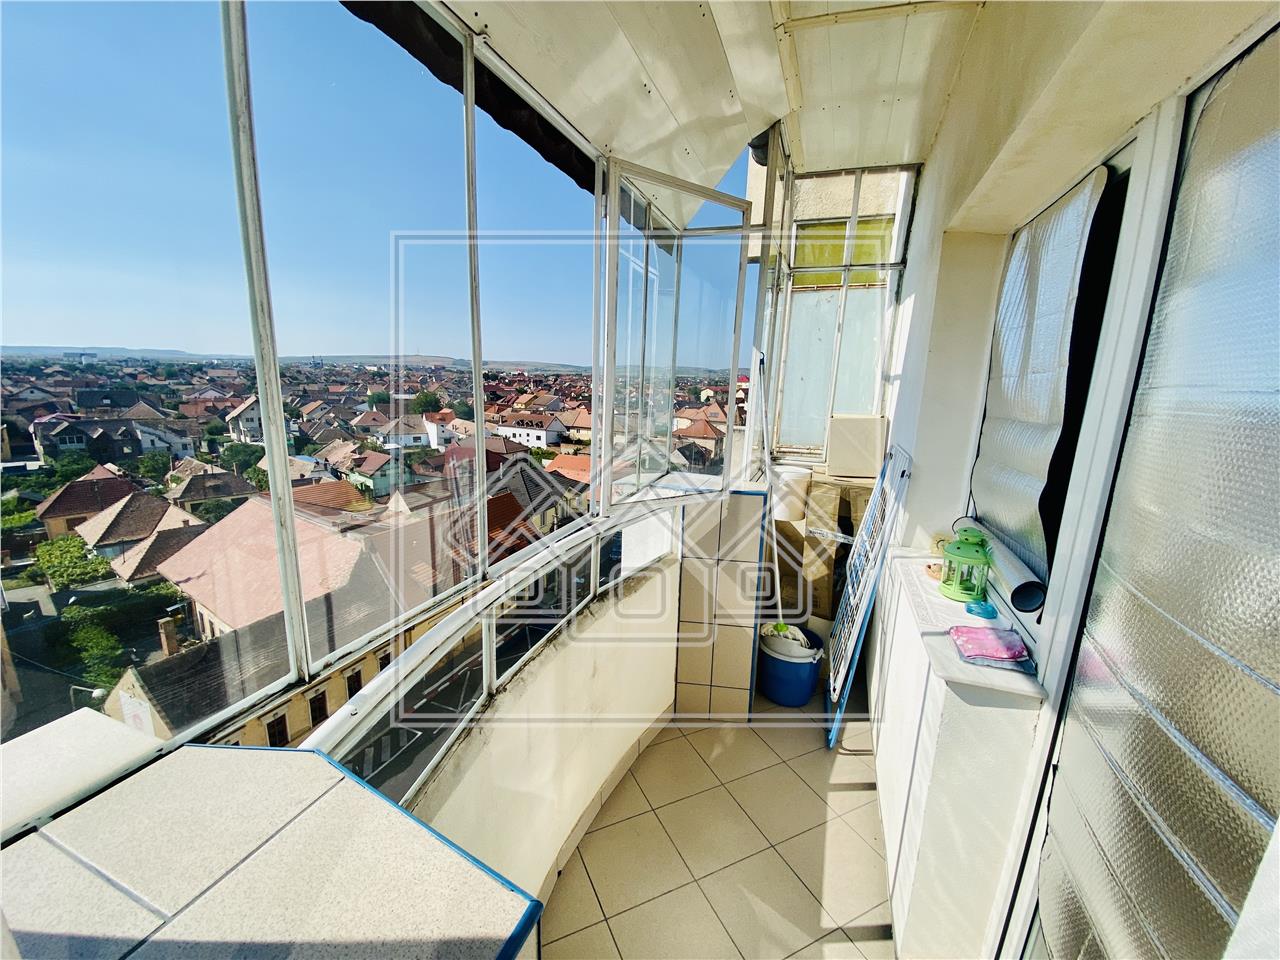 Apartament de vanzare in Sibiu - 3 camere si balcon - Terezian